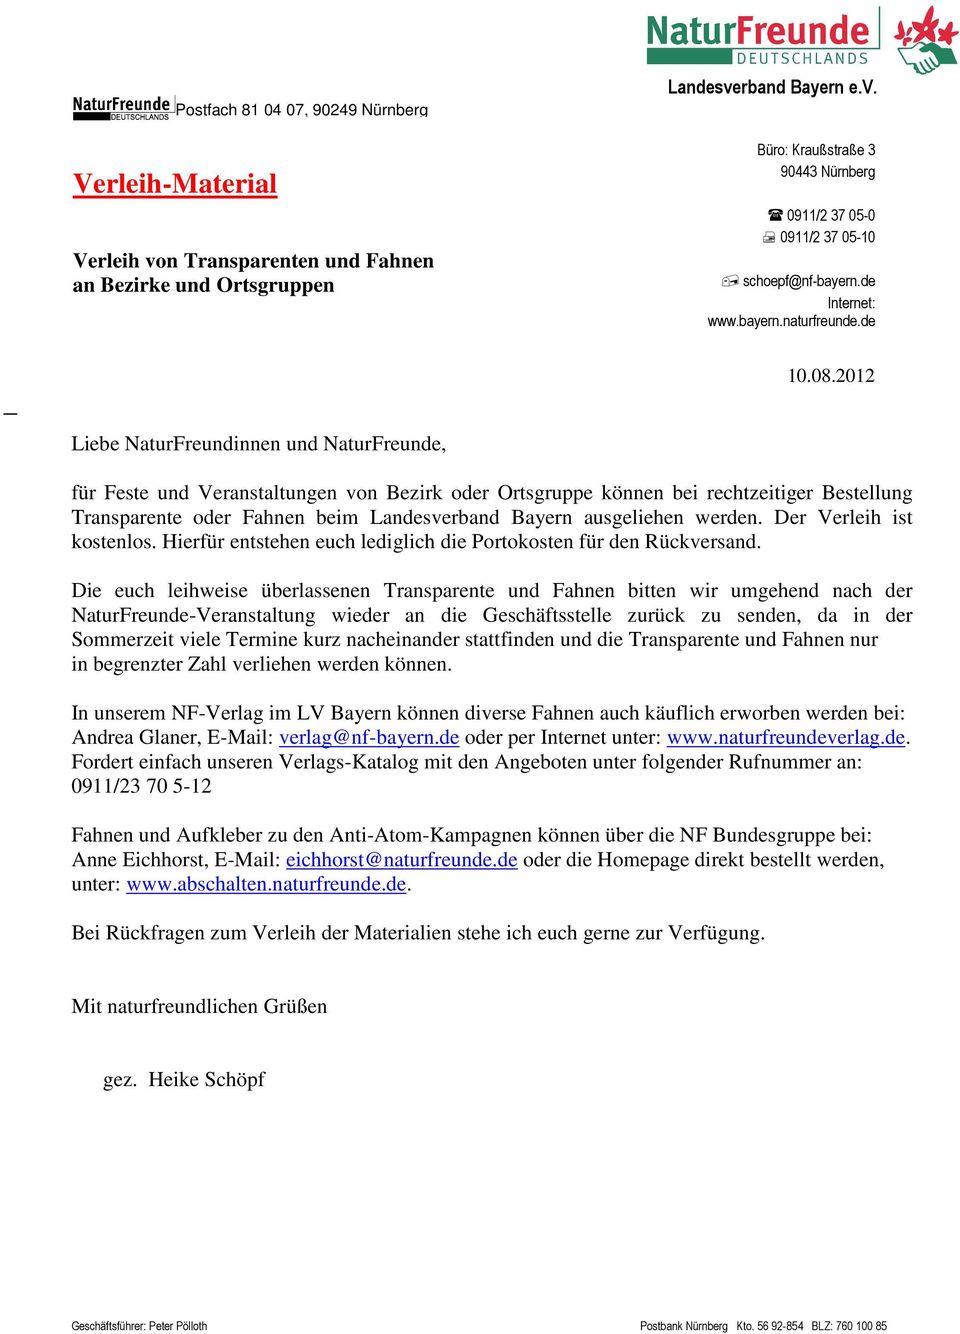 2012 Liebe NaturFreundinnen und NaturFreunde, für Feste und Veranstaltungen von Bezirk oder Ortsgruppe können bei rechtzeitiger Bestellung Transparente oder Fahnen beim Landesverband Bayern